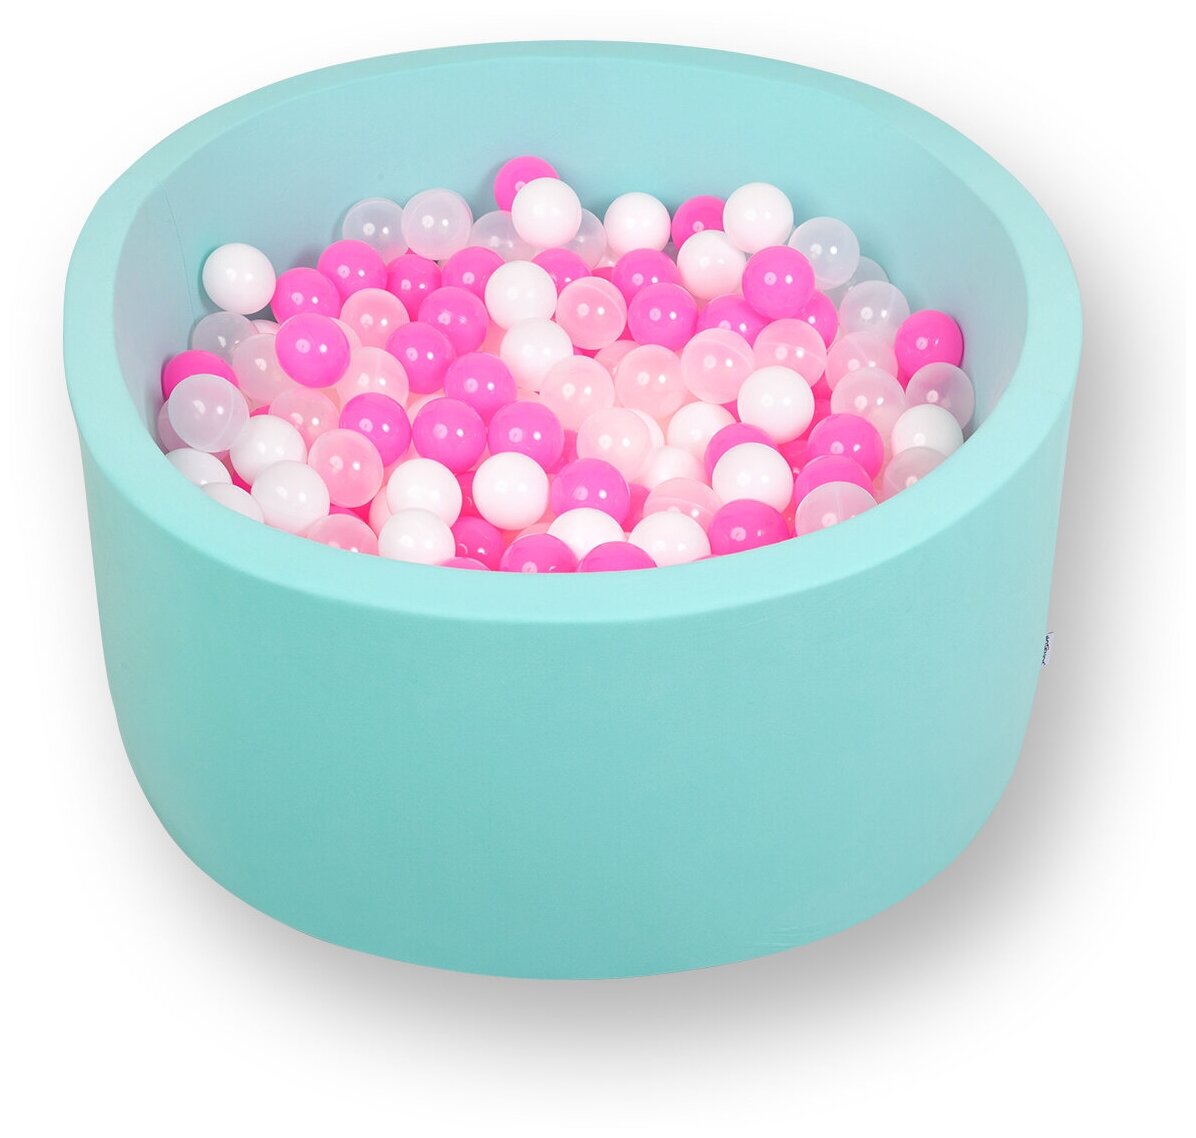 Сухой игровой бассейн "Коктейль" мятный 100х40 см с 200 шариками: розовый, белый, прозрачный (sbh017) - фотография № 1